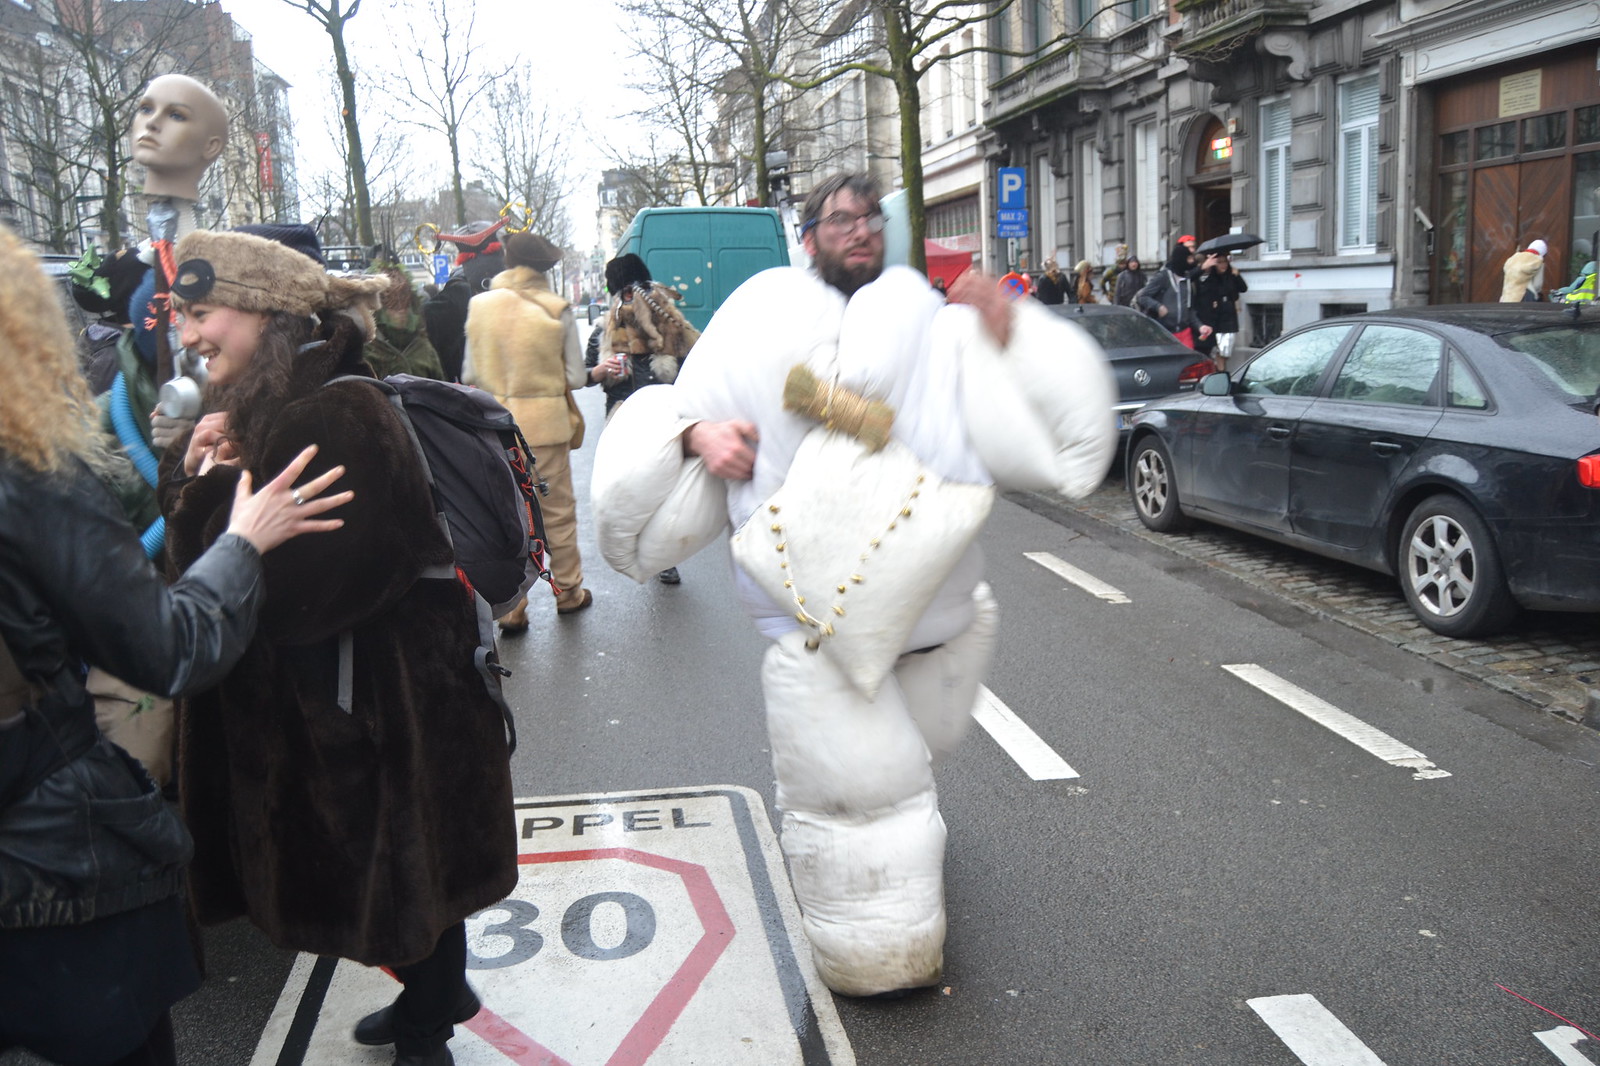 Carnaval Sauvage. Place du Jeu de Balle, 1000 Bruxelles, Belgique. Fotos de zeroanodino para URBANARTIMAÑA. httparteanodino.blogspot.be